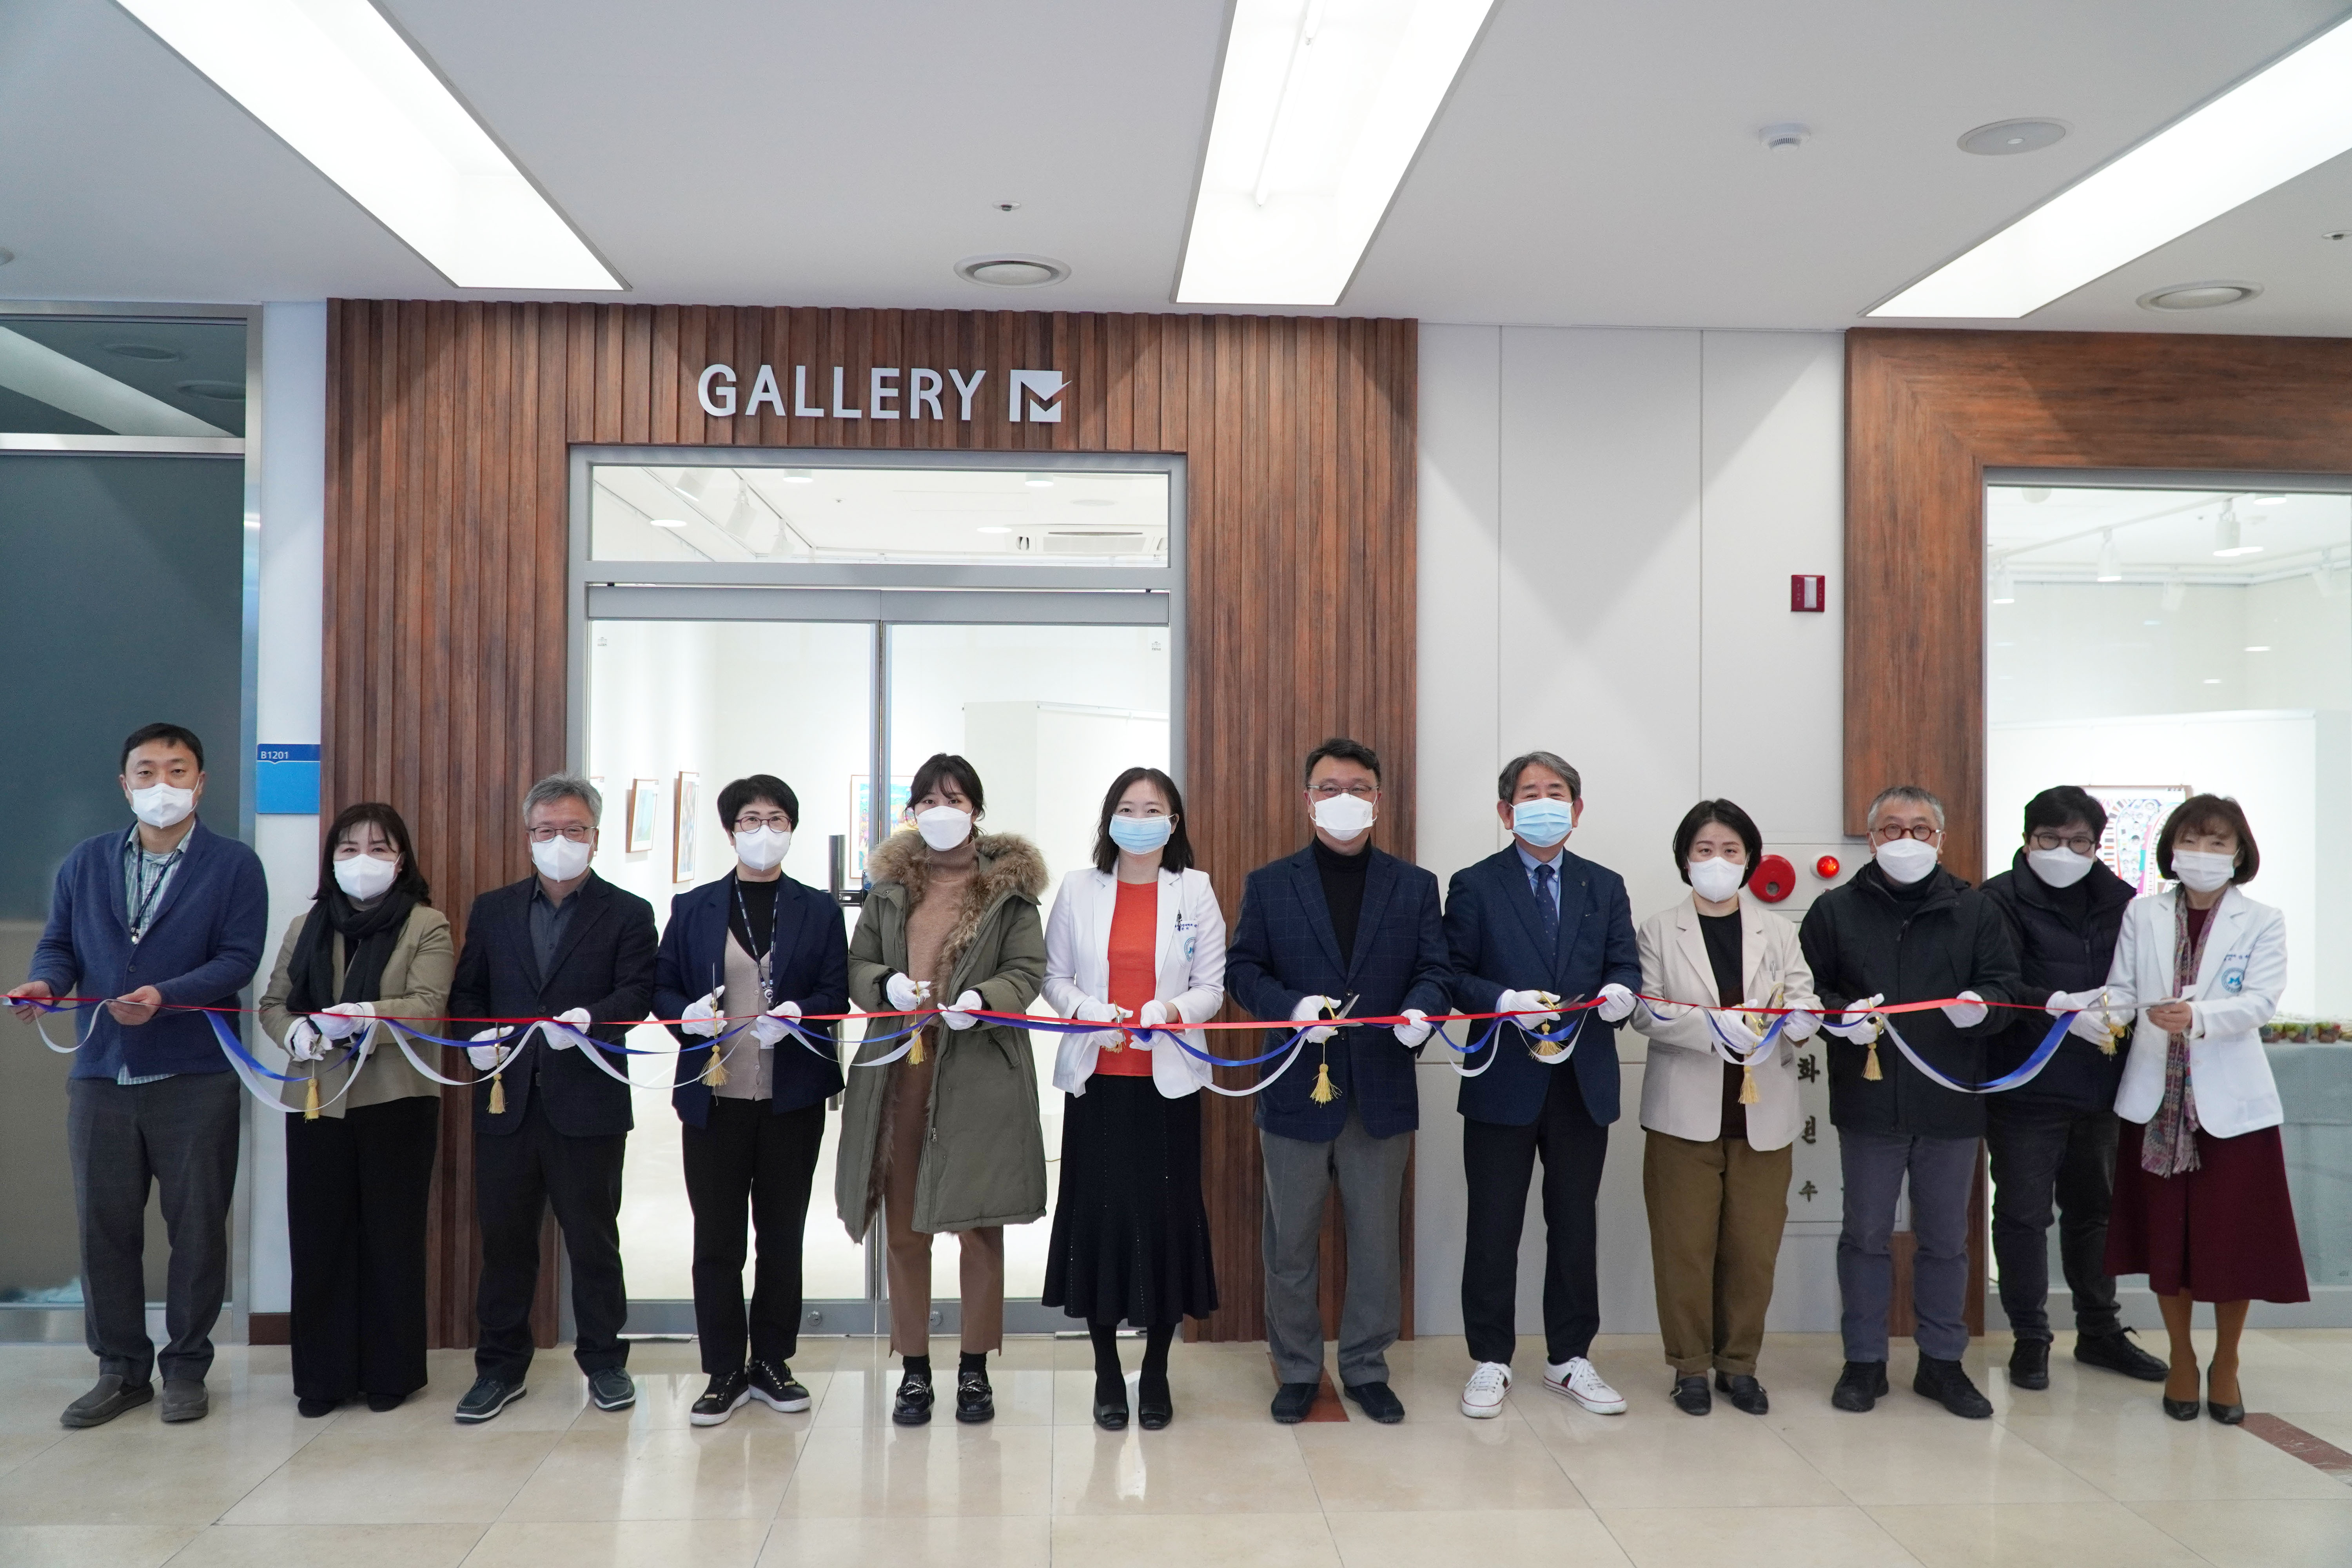 국립정신건강센터 상설기획전시관 Gallery M 입구에서의 임원진 모습